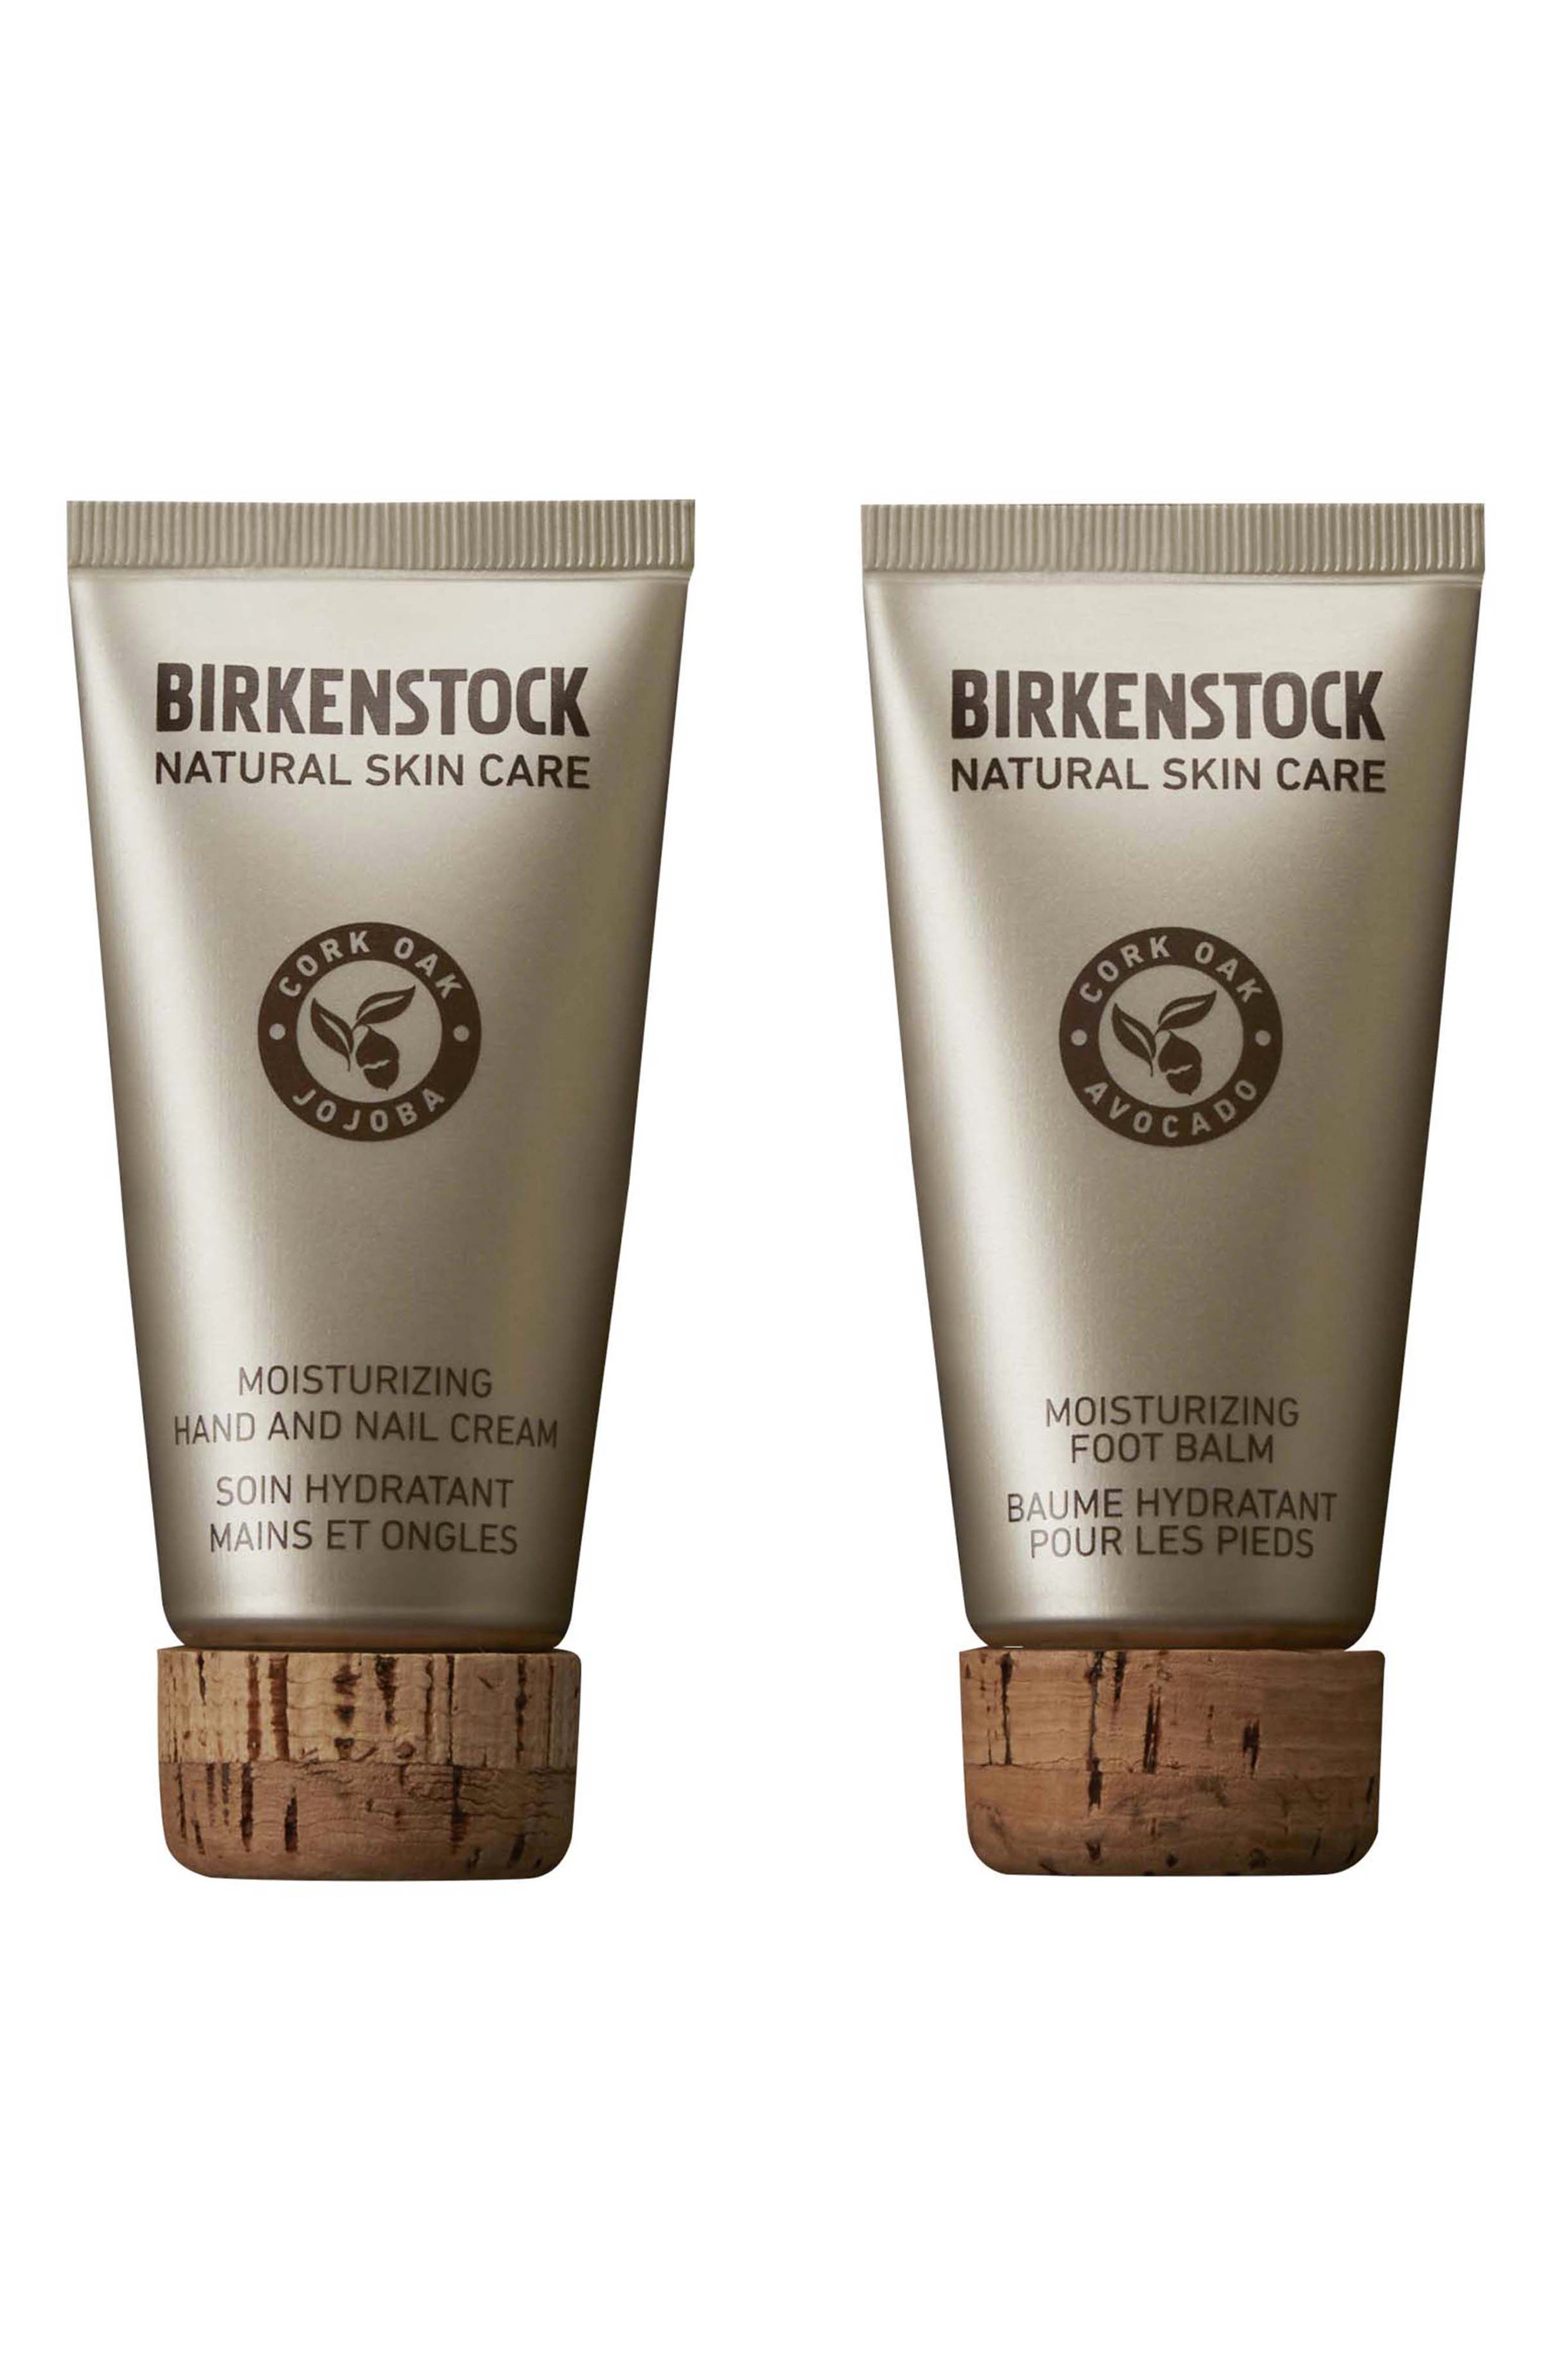 birkenstock under $50